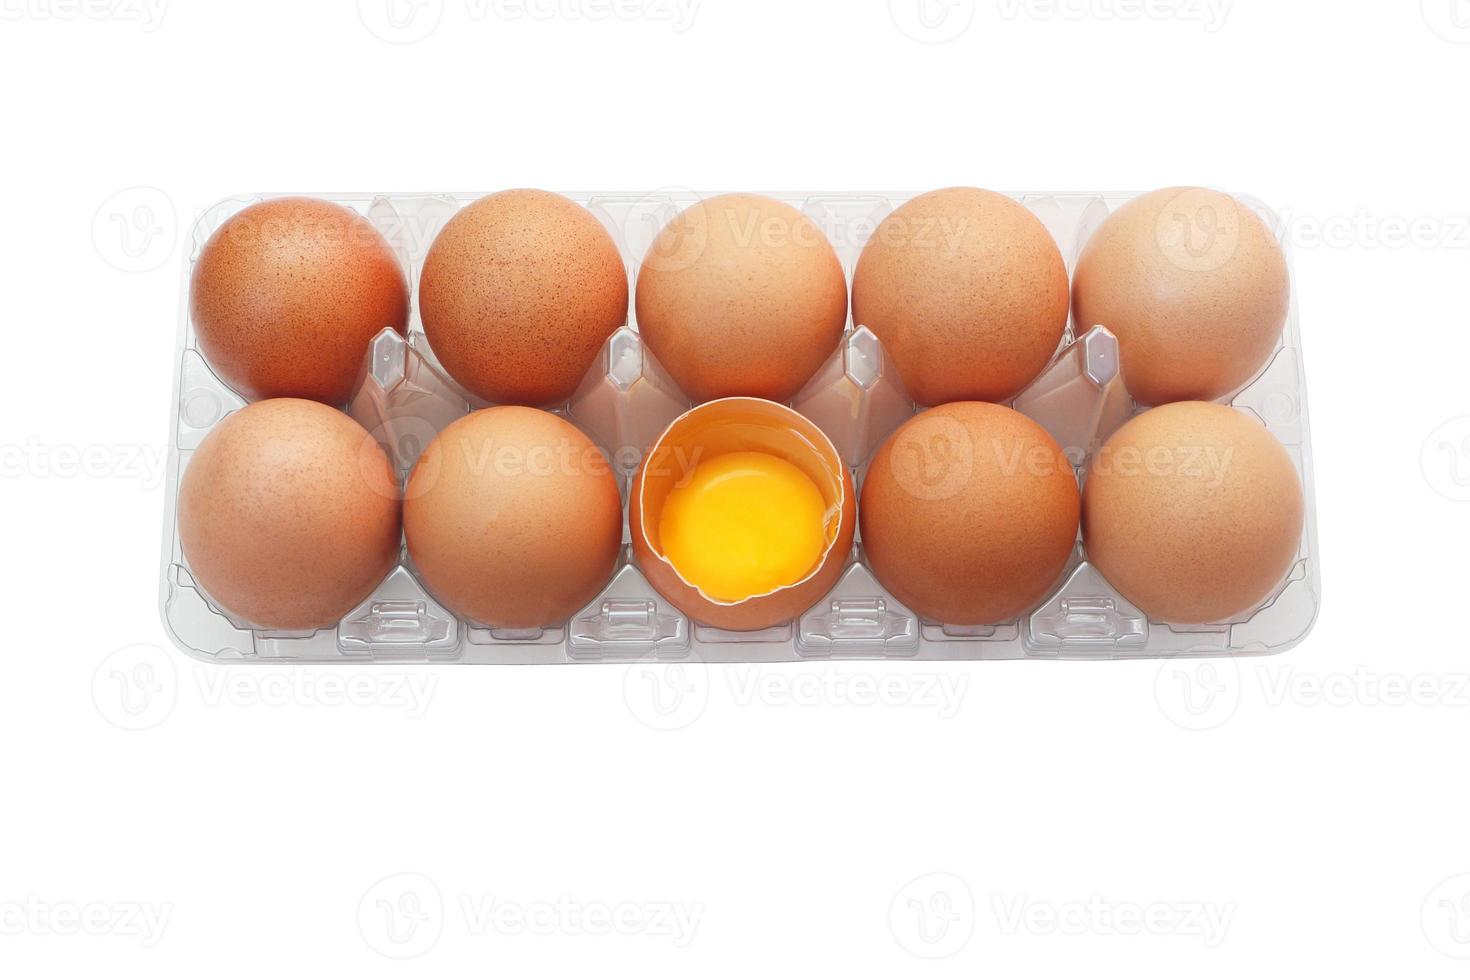 eieren van kip in plastic dienblad geïsoleerd op een witte achtergrond. een ei werd geopend om de verse dooier binnenin te onthullen. foto